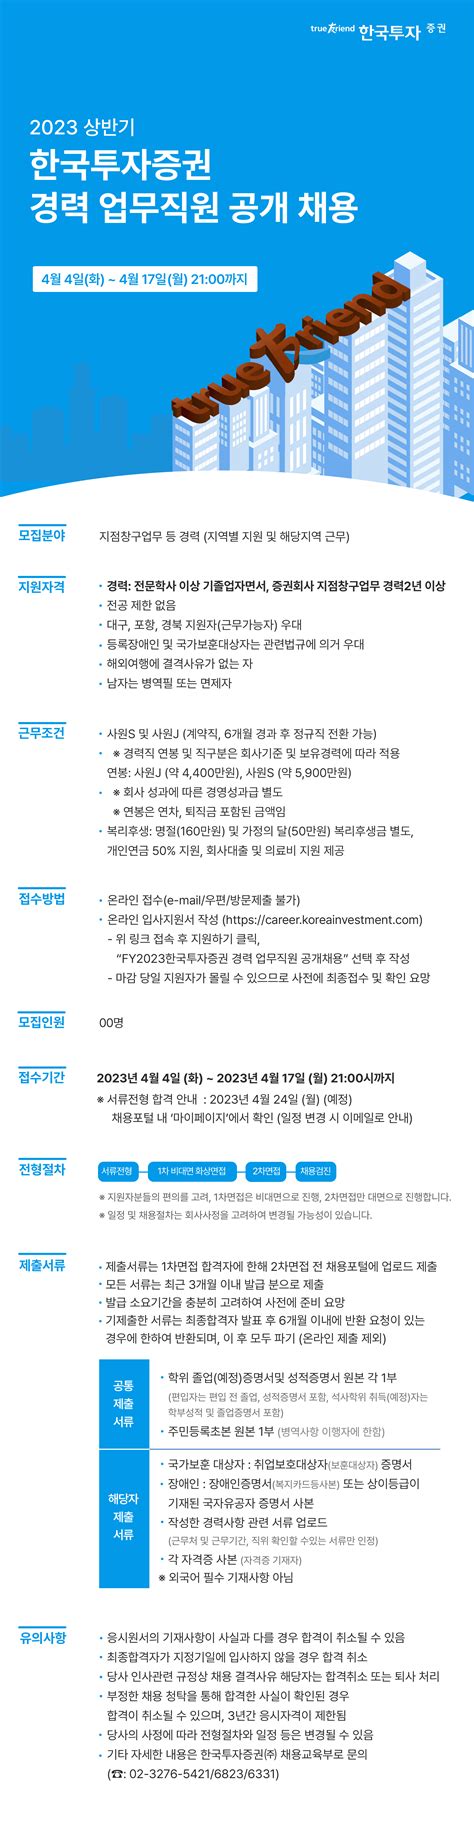 한국투자증권 채용사이트